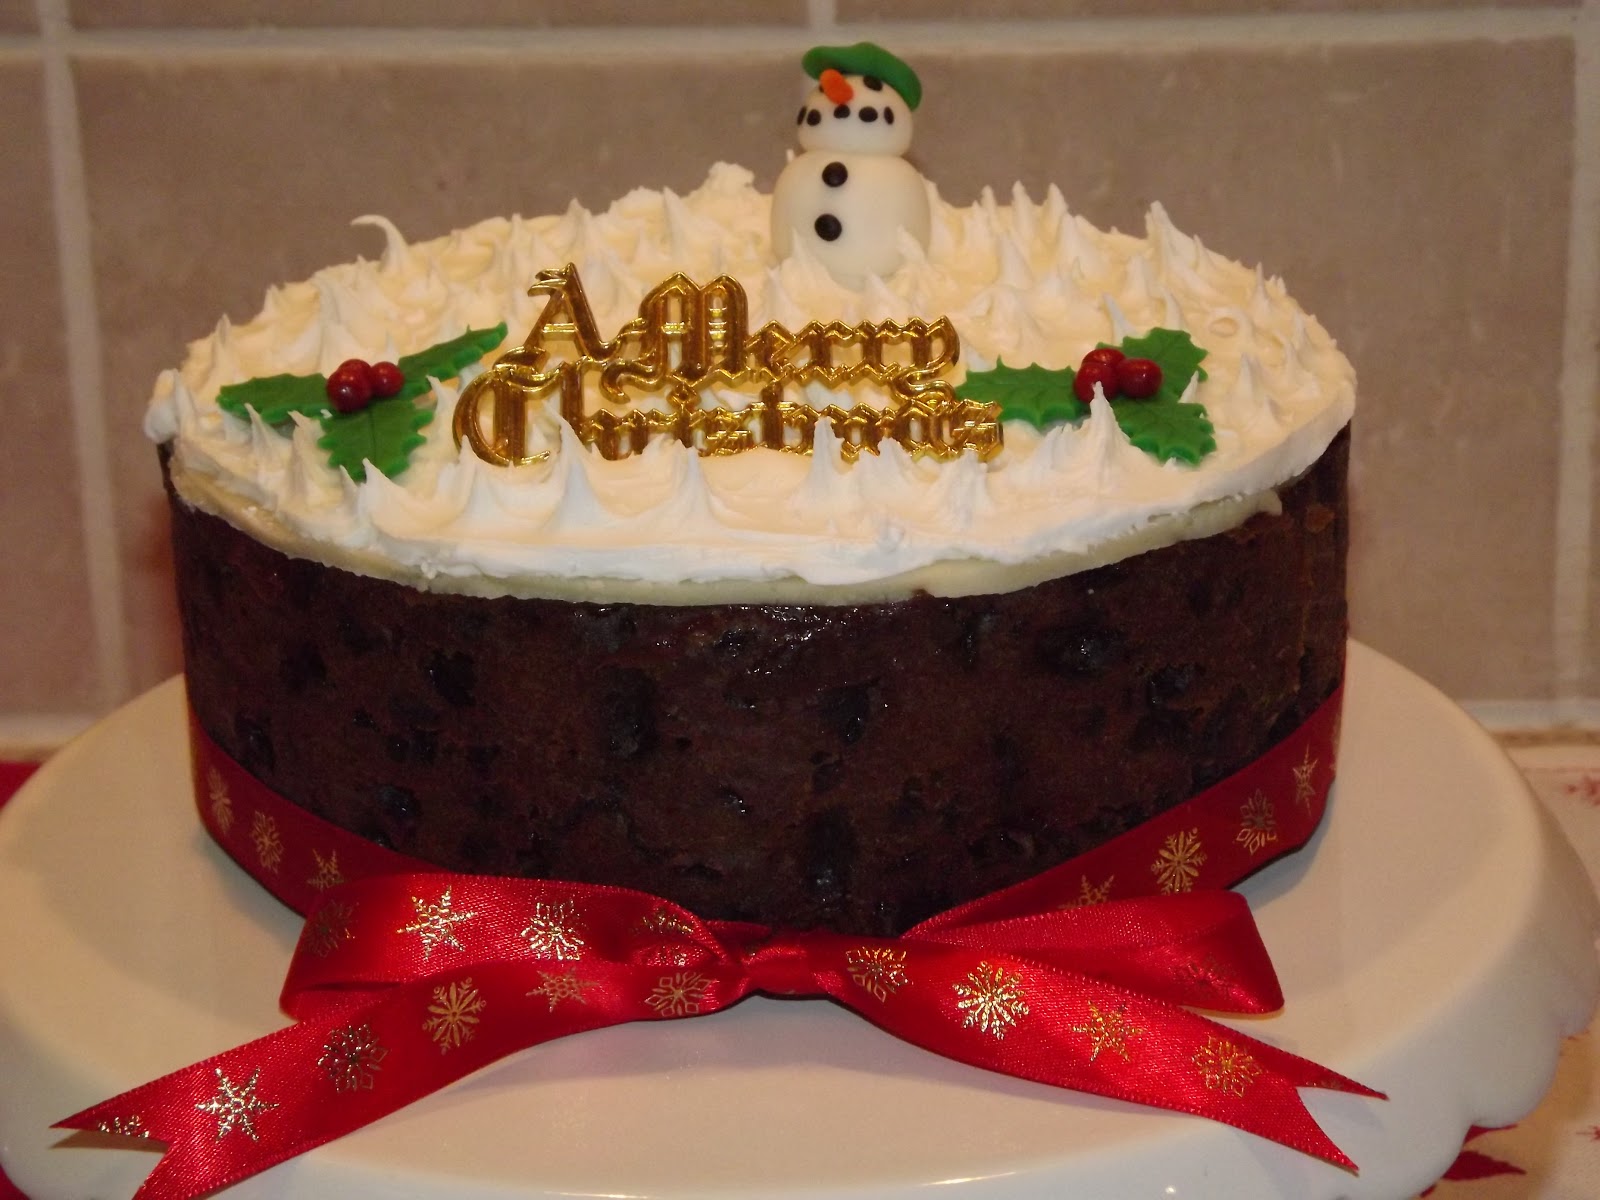 Icing...so sweetly: Homemade christmas cake